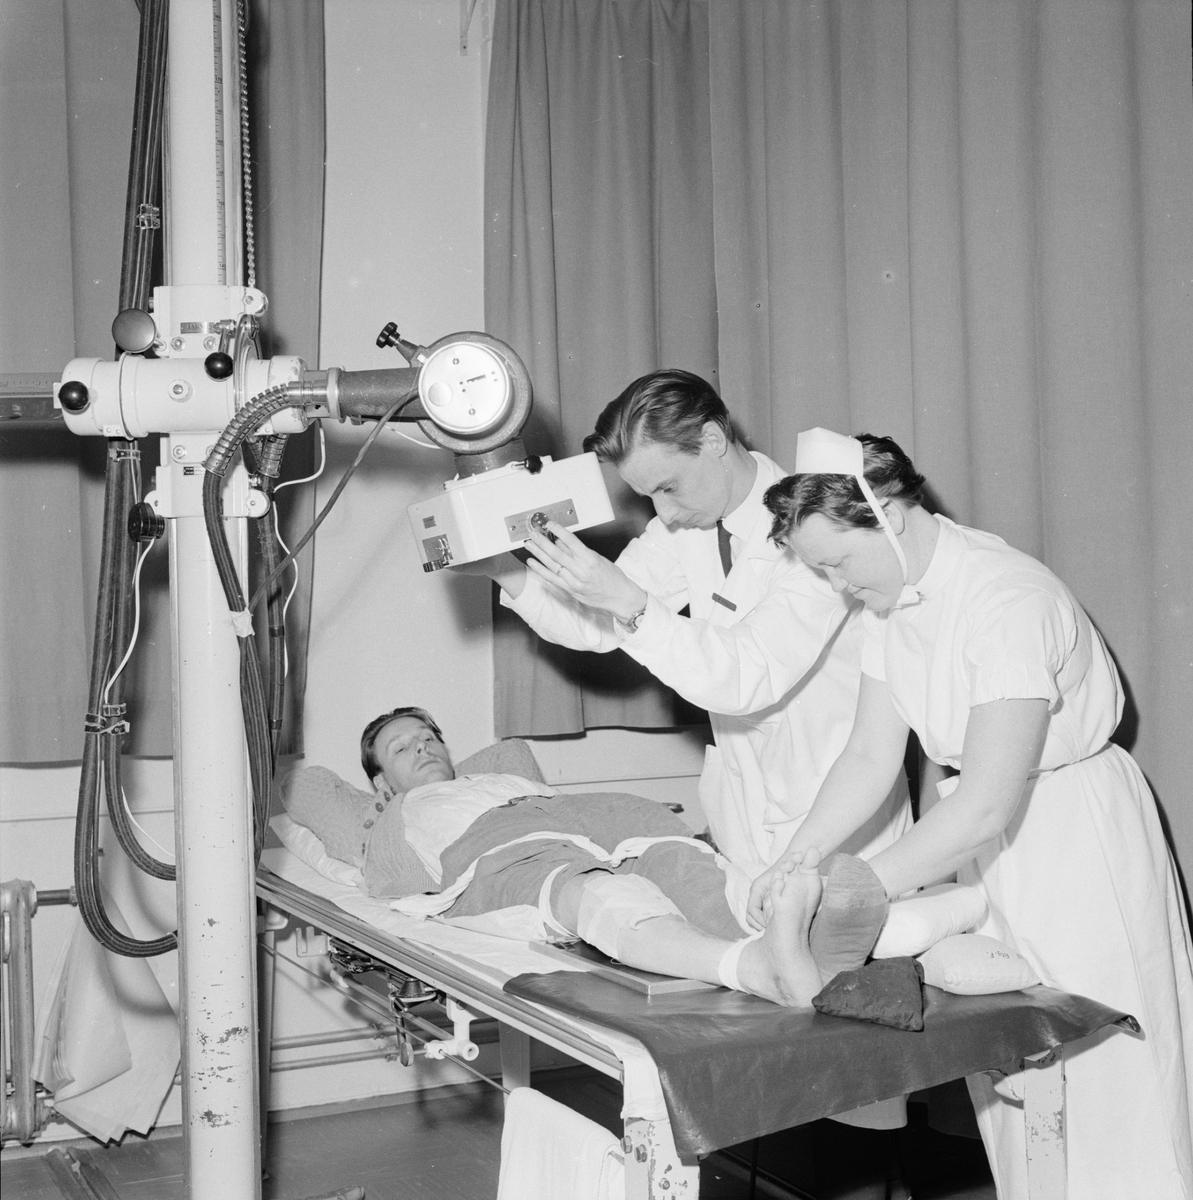 Akademiska sjukhuset, 40-dubblad aktivitet under 50-årsröntgen, Uppsala, april 1959